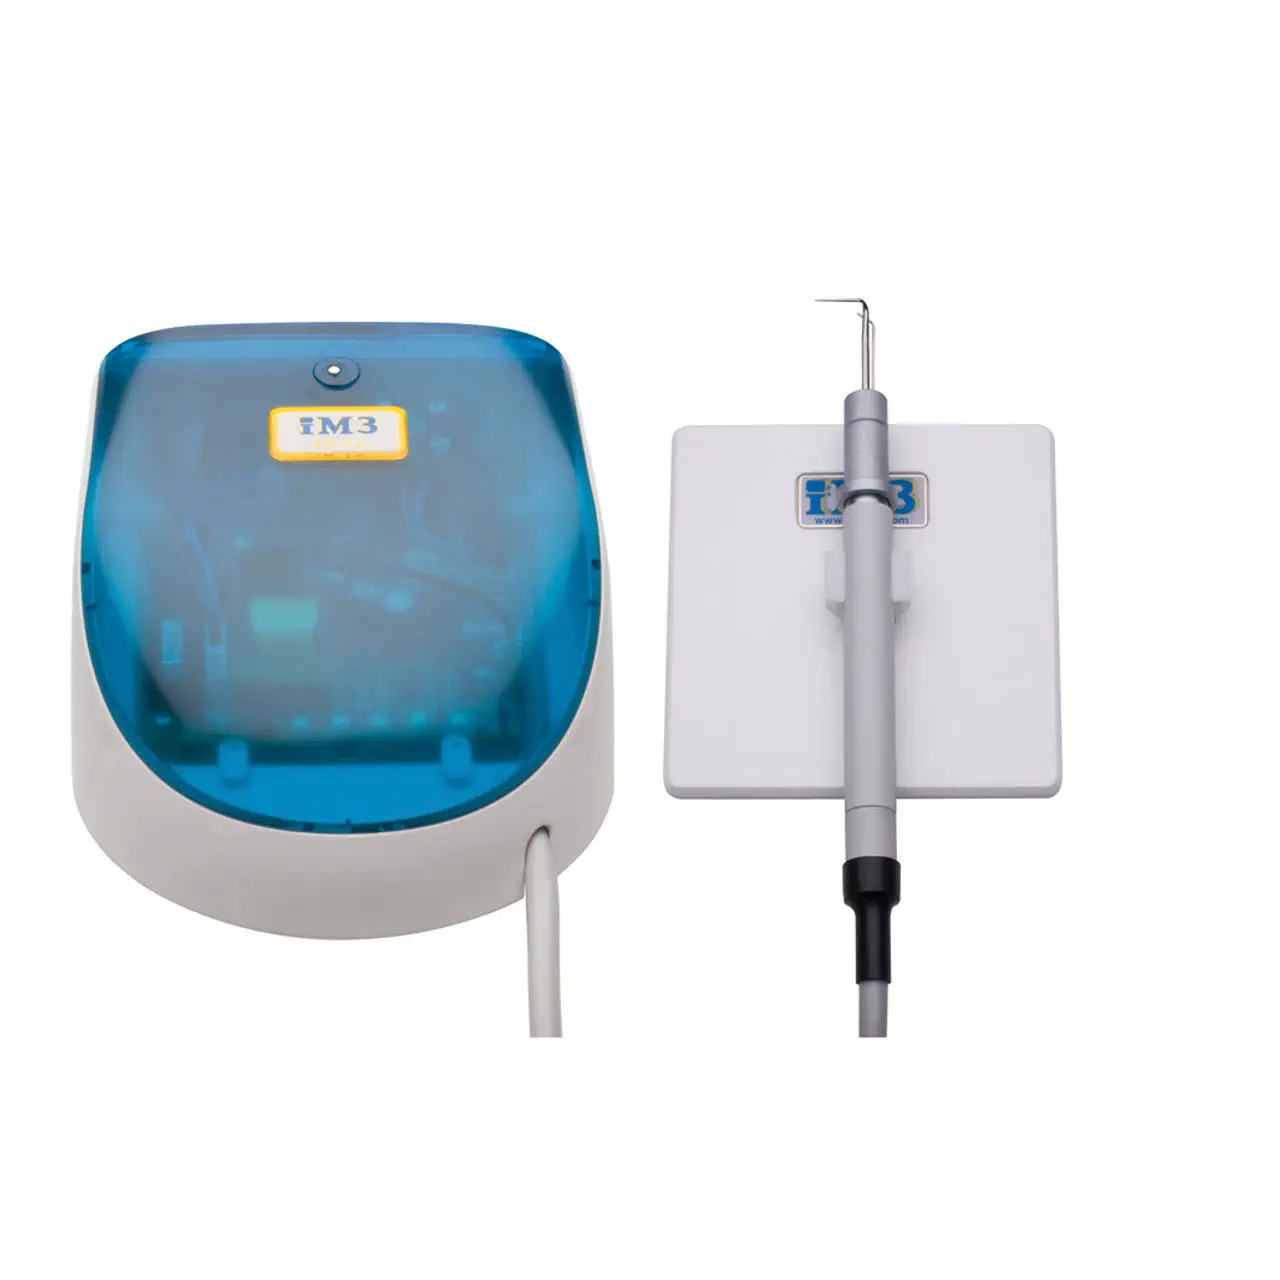 เครื่องขูดหินปูนสำหรับสัตว์  Ultrasonic dental scaler 42-12  iM3